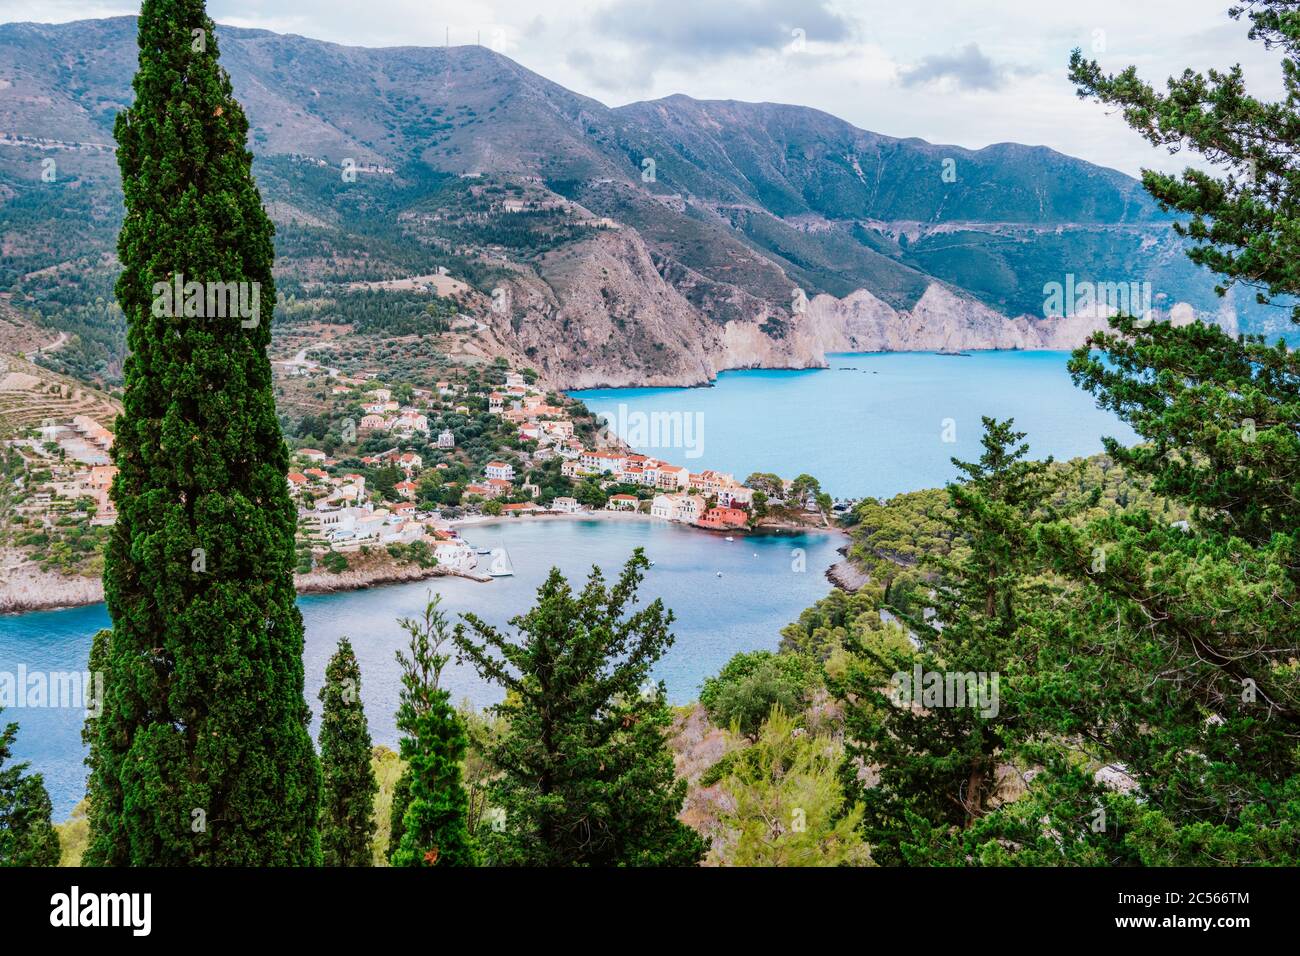 Frourio península y Assos pueblo con hermosa bahía de mar y cipreses árboles en primer plano. Isla de Kefalonia, Grecia. Foto de stock